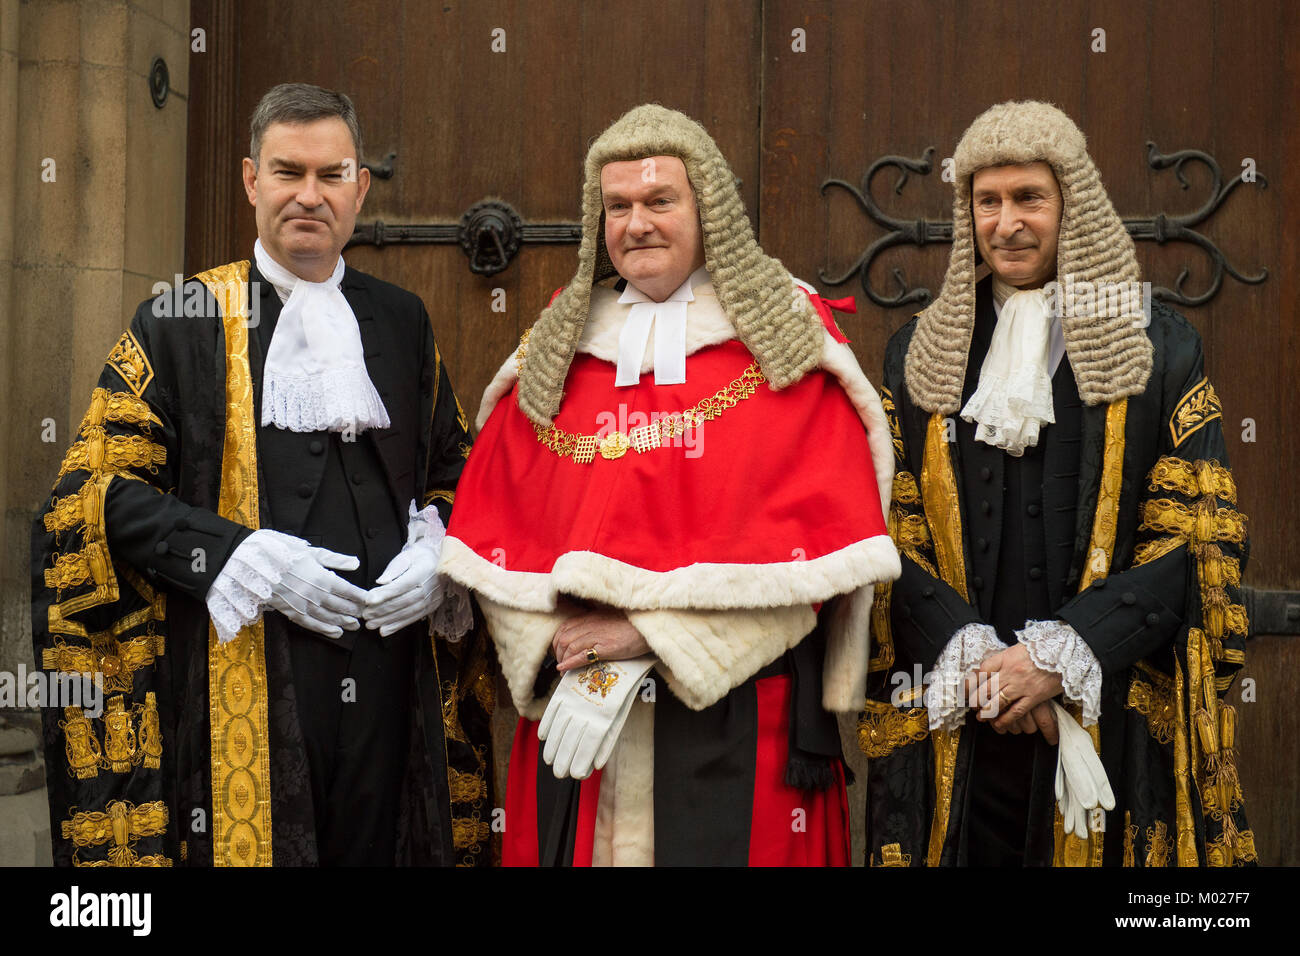 Herr Bundeskanzler David Gauke (links) posiert für ein Foto mit Lord Chief Justice Herr Thomas von Cwmgiedd (Mitte) und Master der Rollen Sir Terence Etherton (rechts), als er für seine Vereidigung ankommt - in der Zeremonie an der Royal Courts of Justice in London. Stockfoto